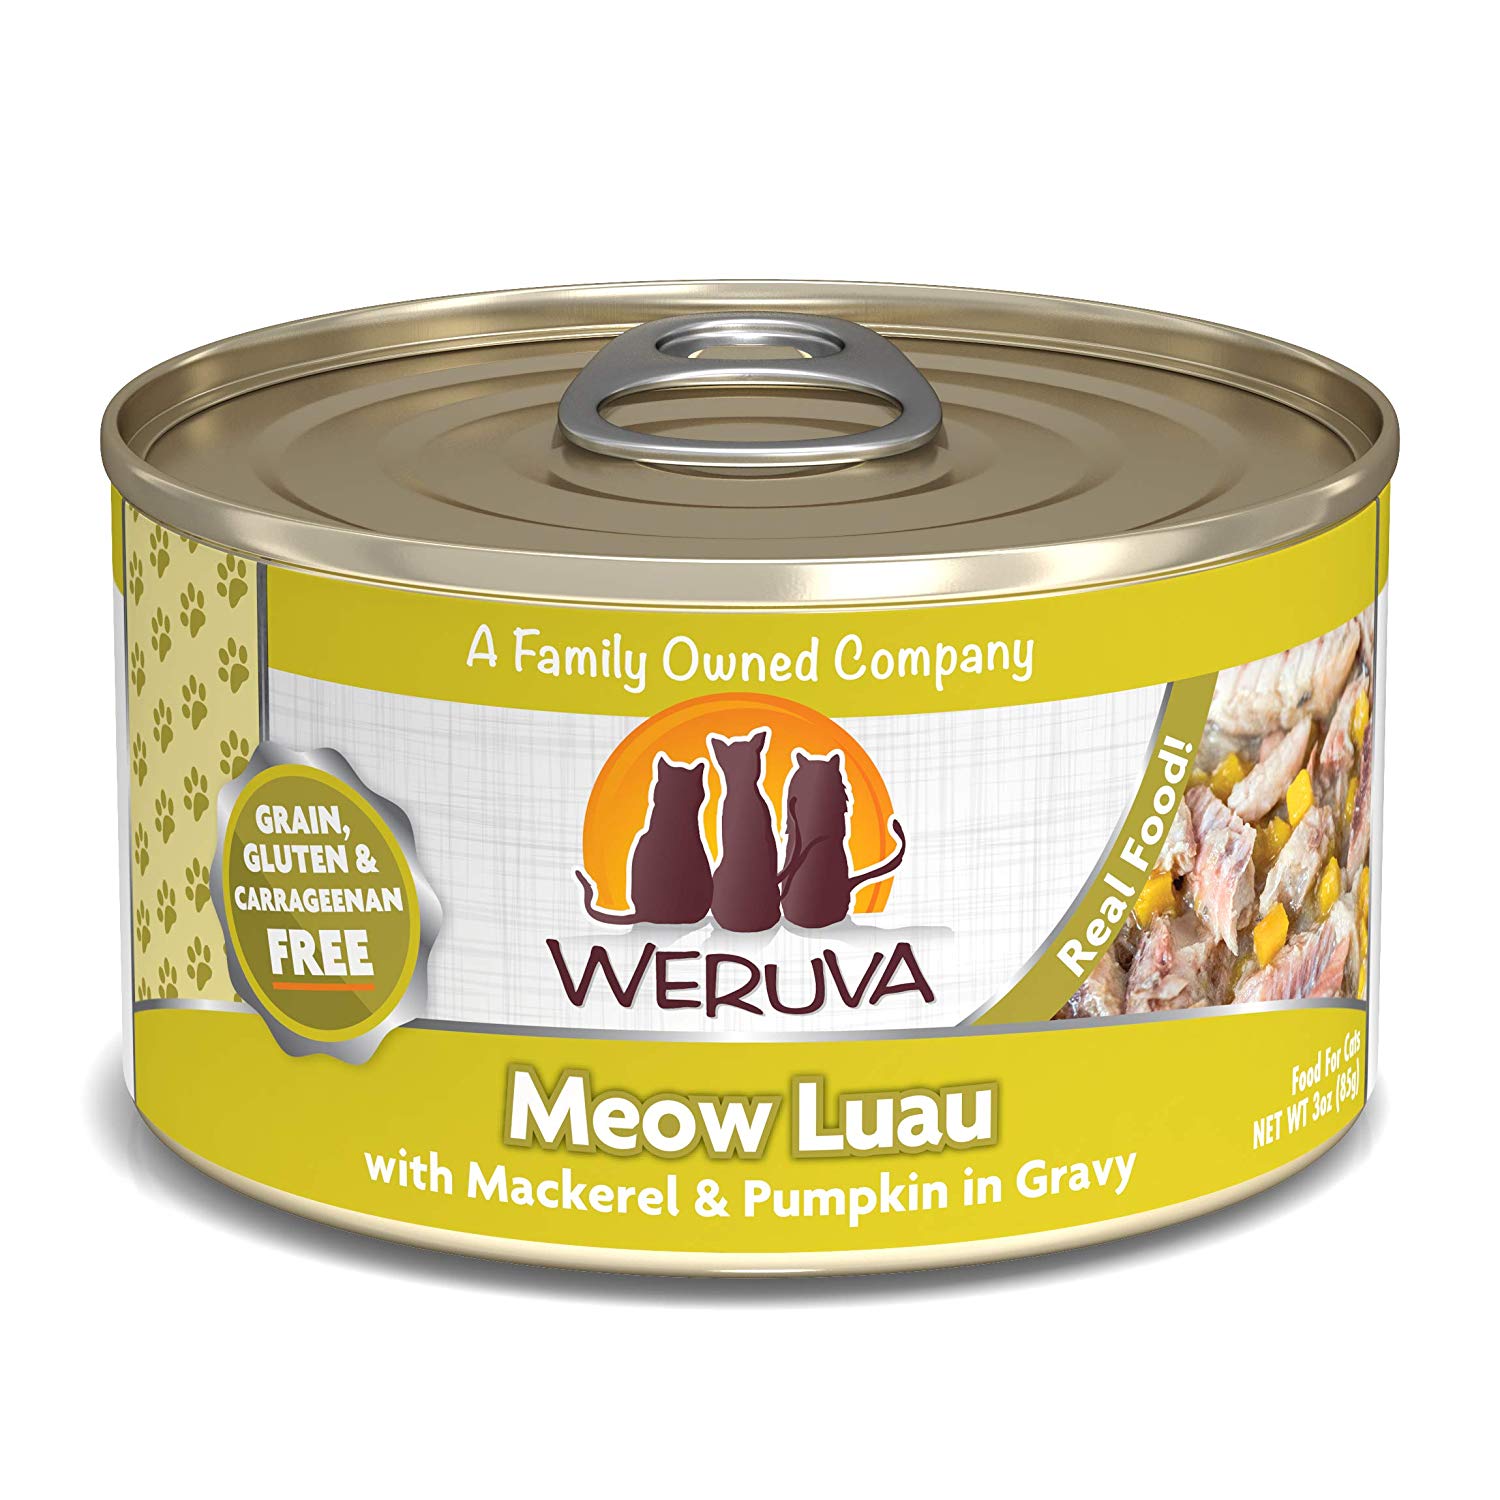 唯美味主食貓罐-夏威夷盛宴
WERUVA-Meow Luau With Mackerel and Pumpkin